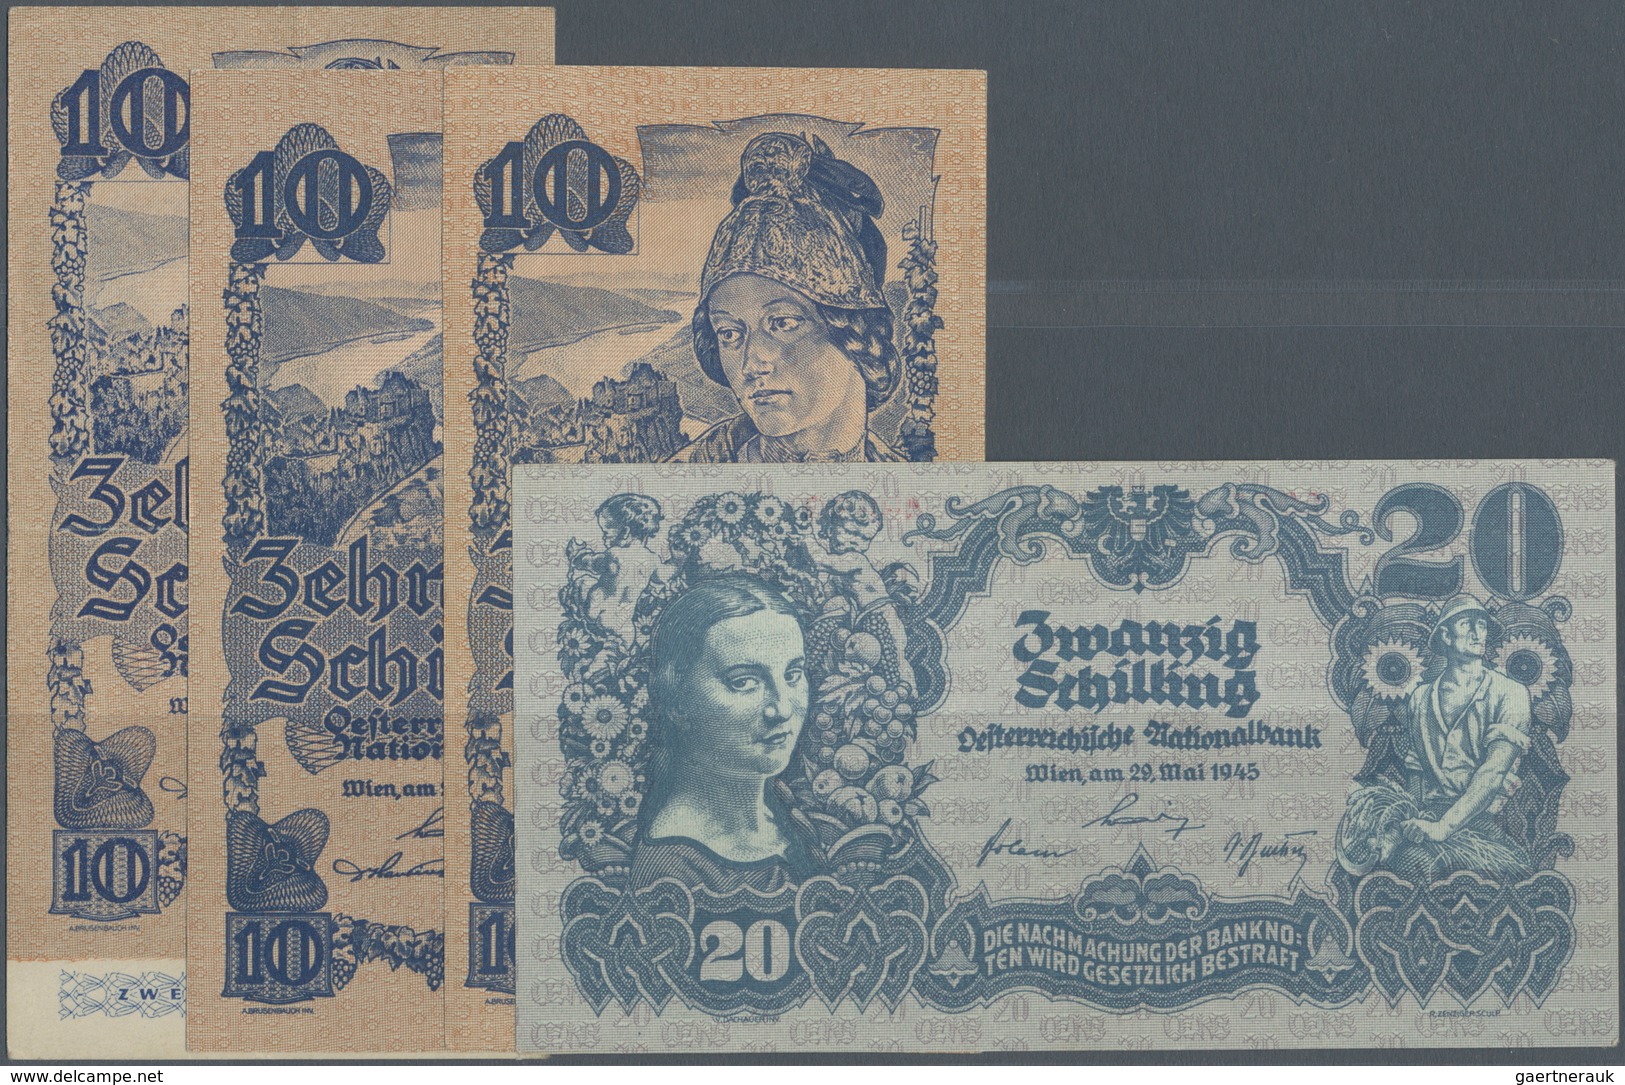 Austria / Österreich: Set Of 4 Notes Containing 10 Schilling (2nd Issue) 1945 (VF) P. 114, 2x 10 Sch - Austria